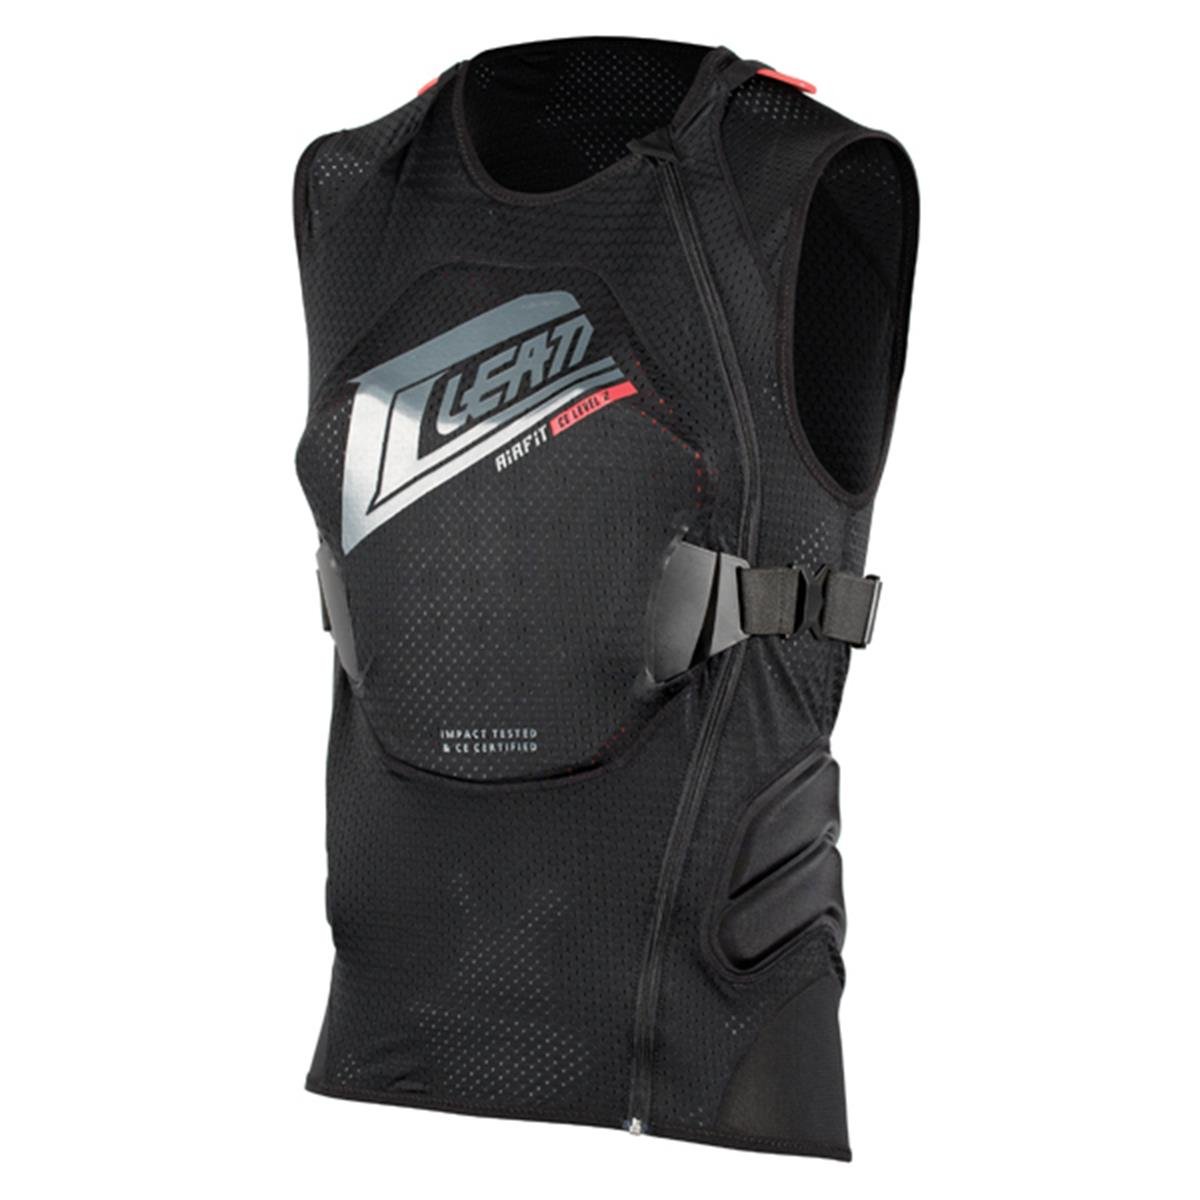 Leatt Protector Vest 3DF AirFit Black